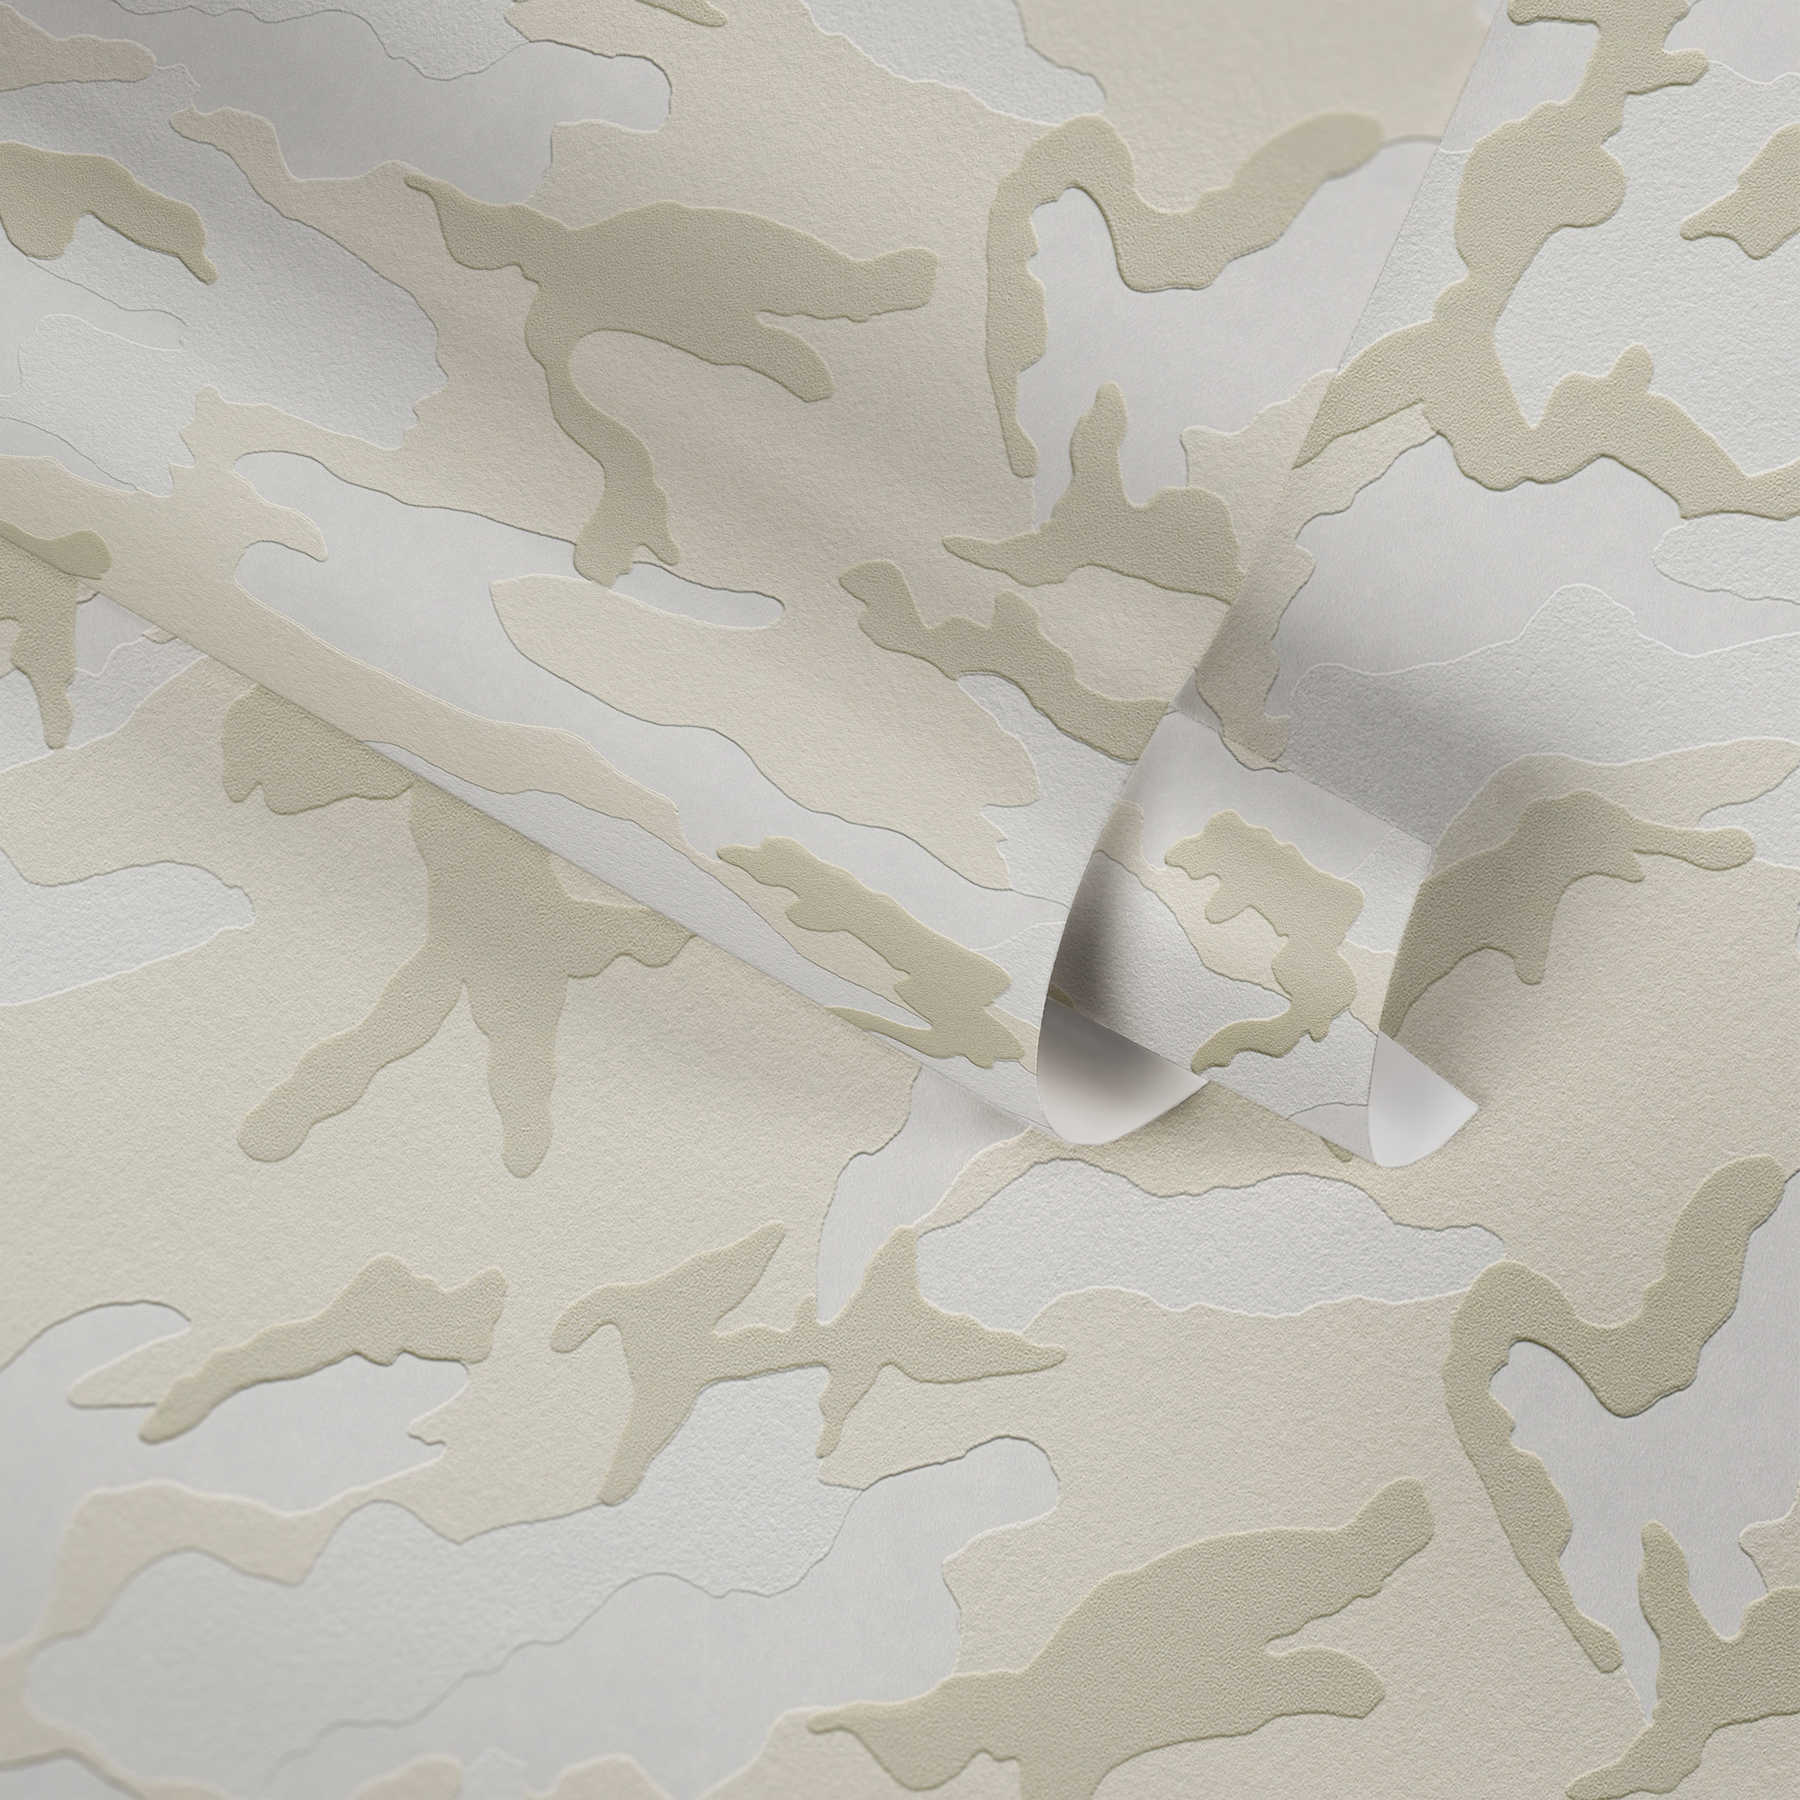             motif camouflage papier peint neige, papier peint intissé camouflage - gris, crème
        